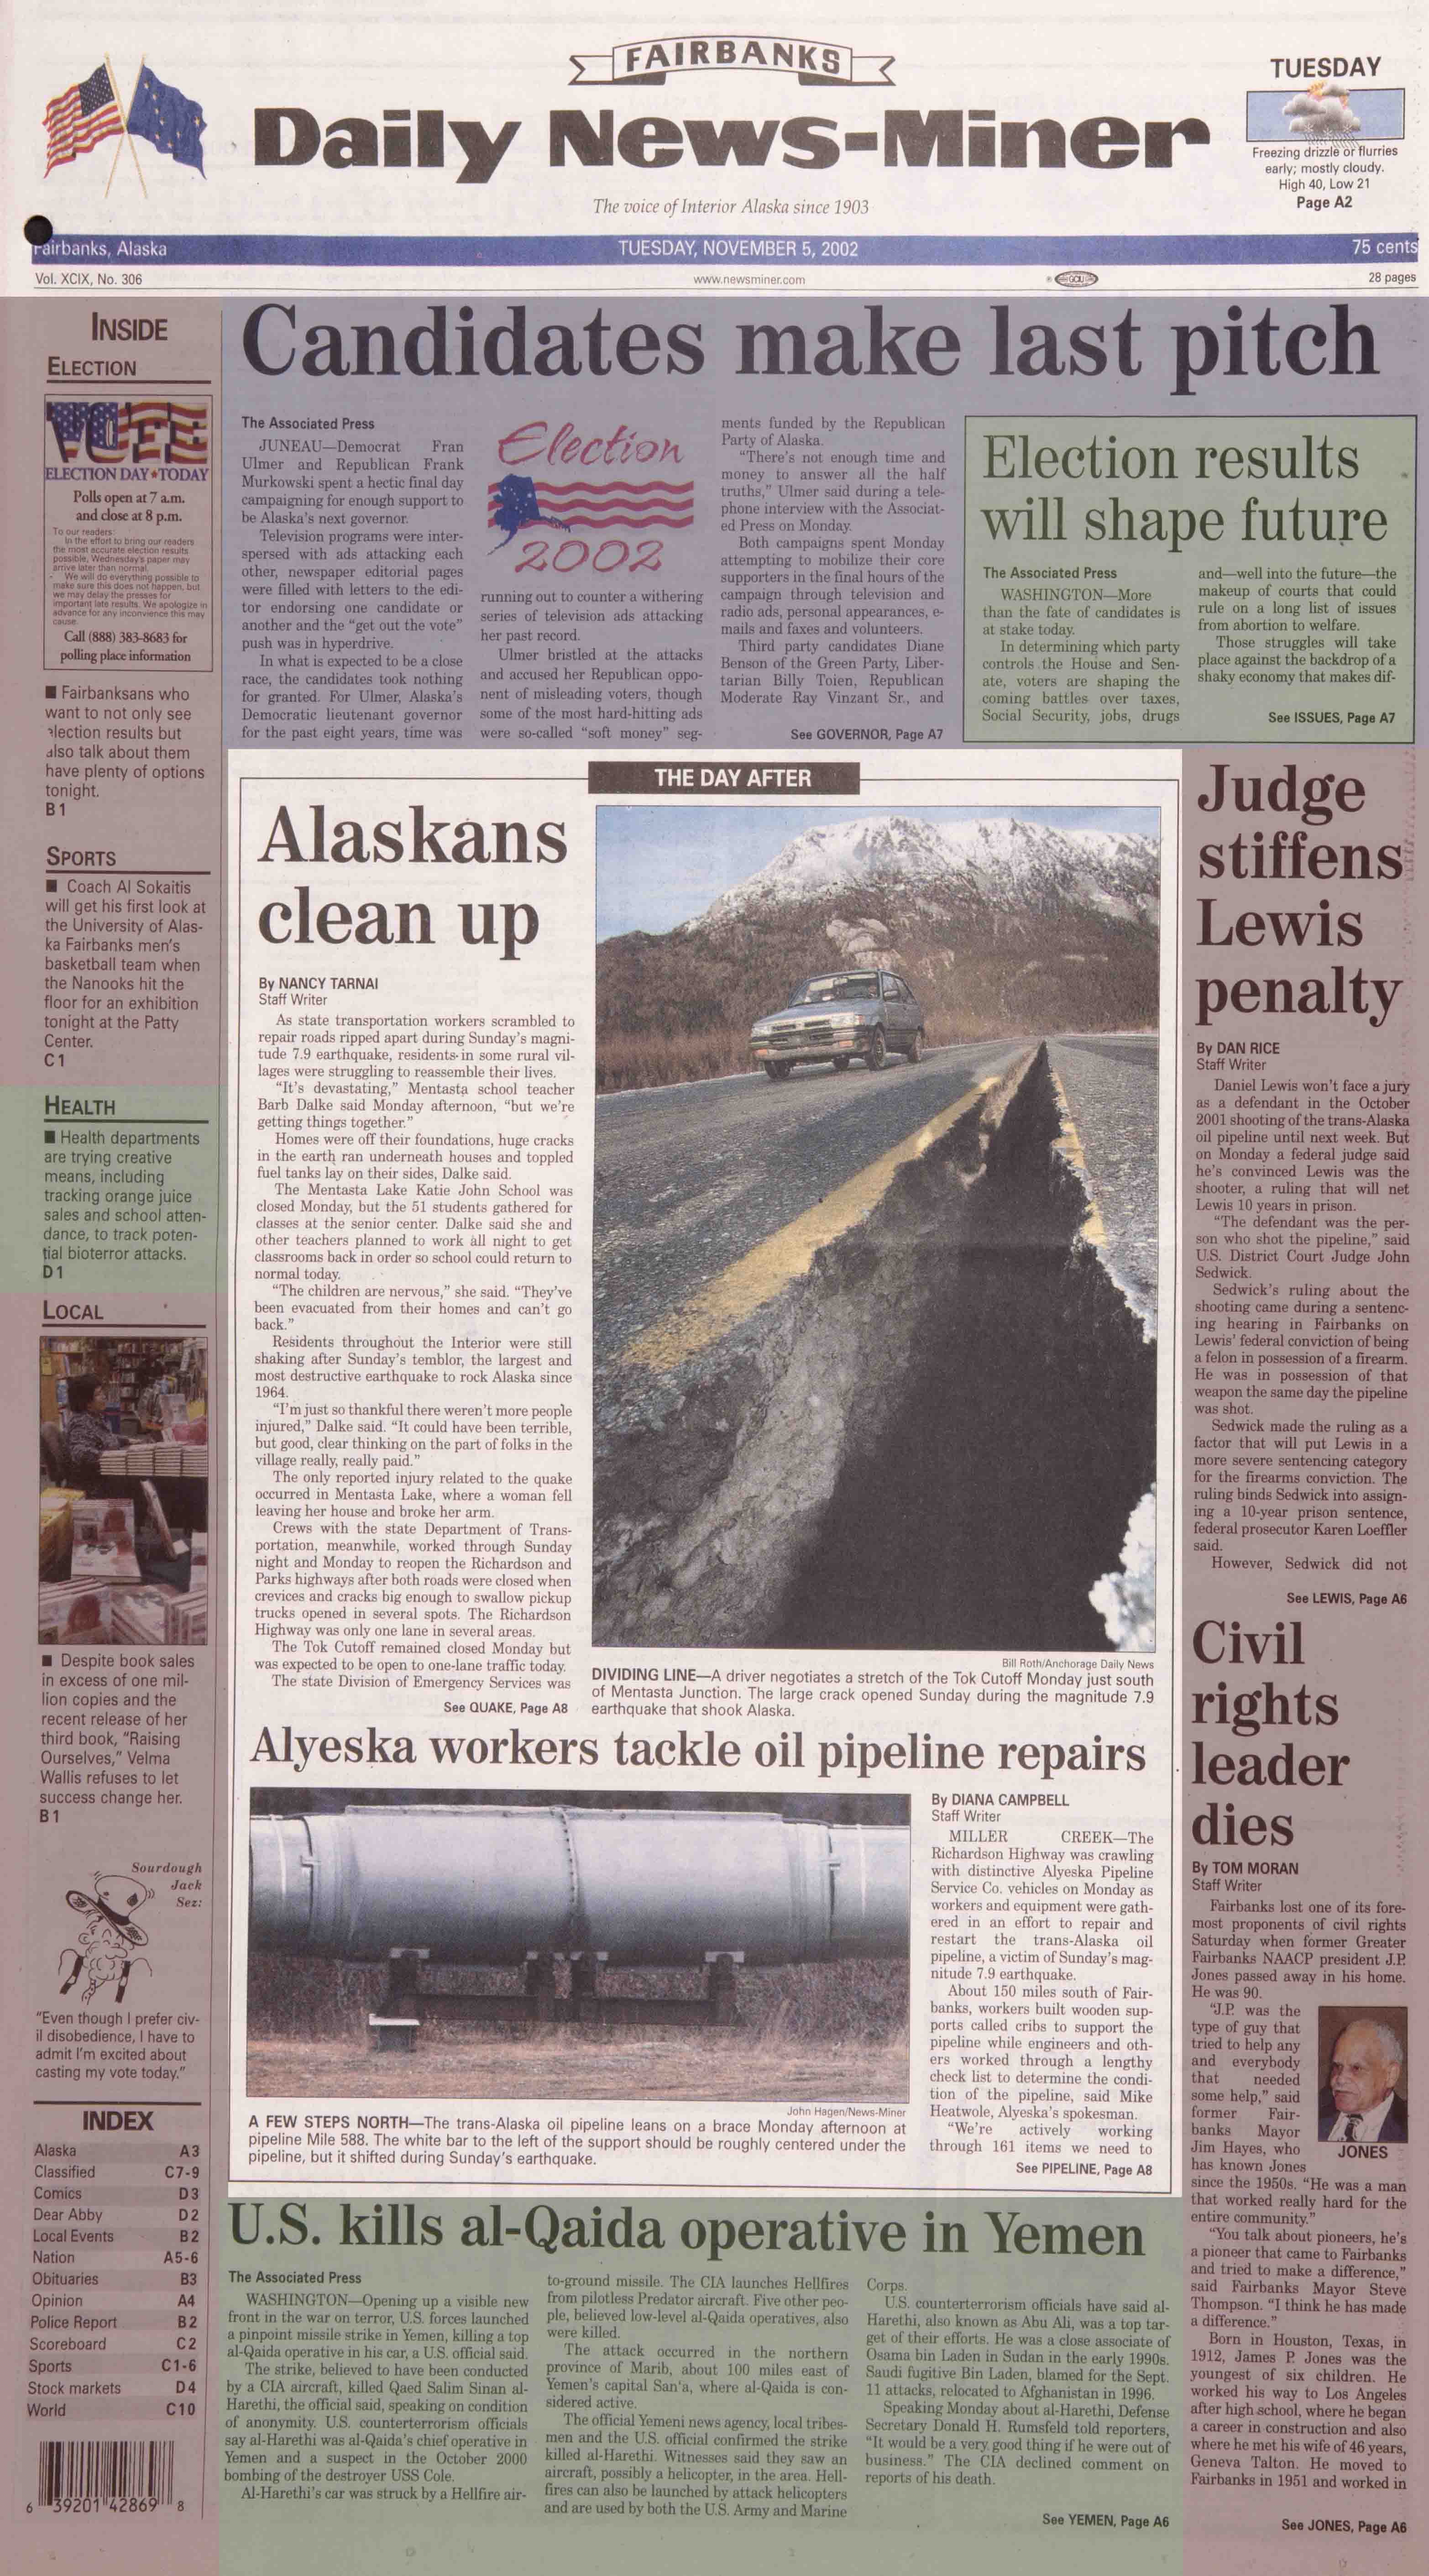 2002 November 5, Fairbanks Daily News-Miner (pg 1)